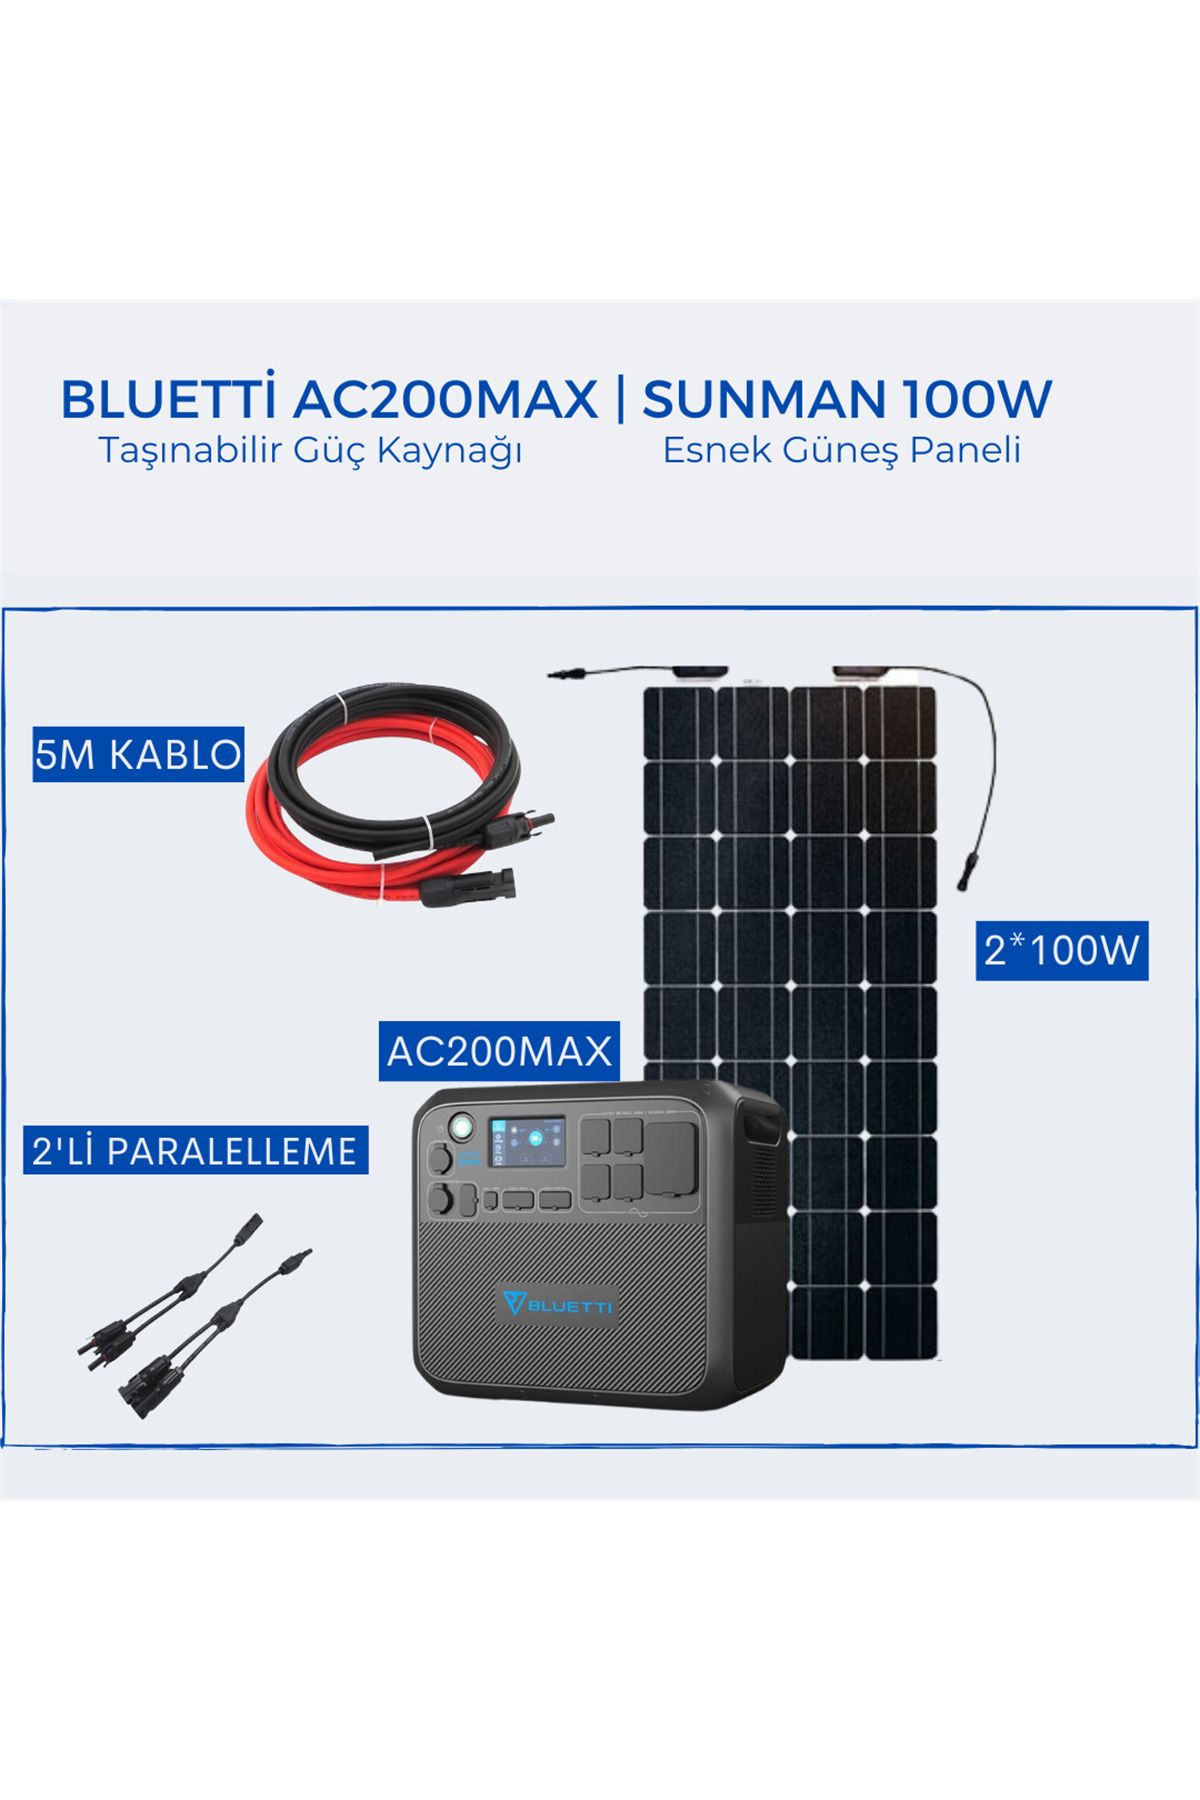 Bluetti Ac200max Taşınabilir Güç Kaynağı | Sunman 100w Güneş Paneli Paketi